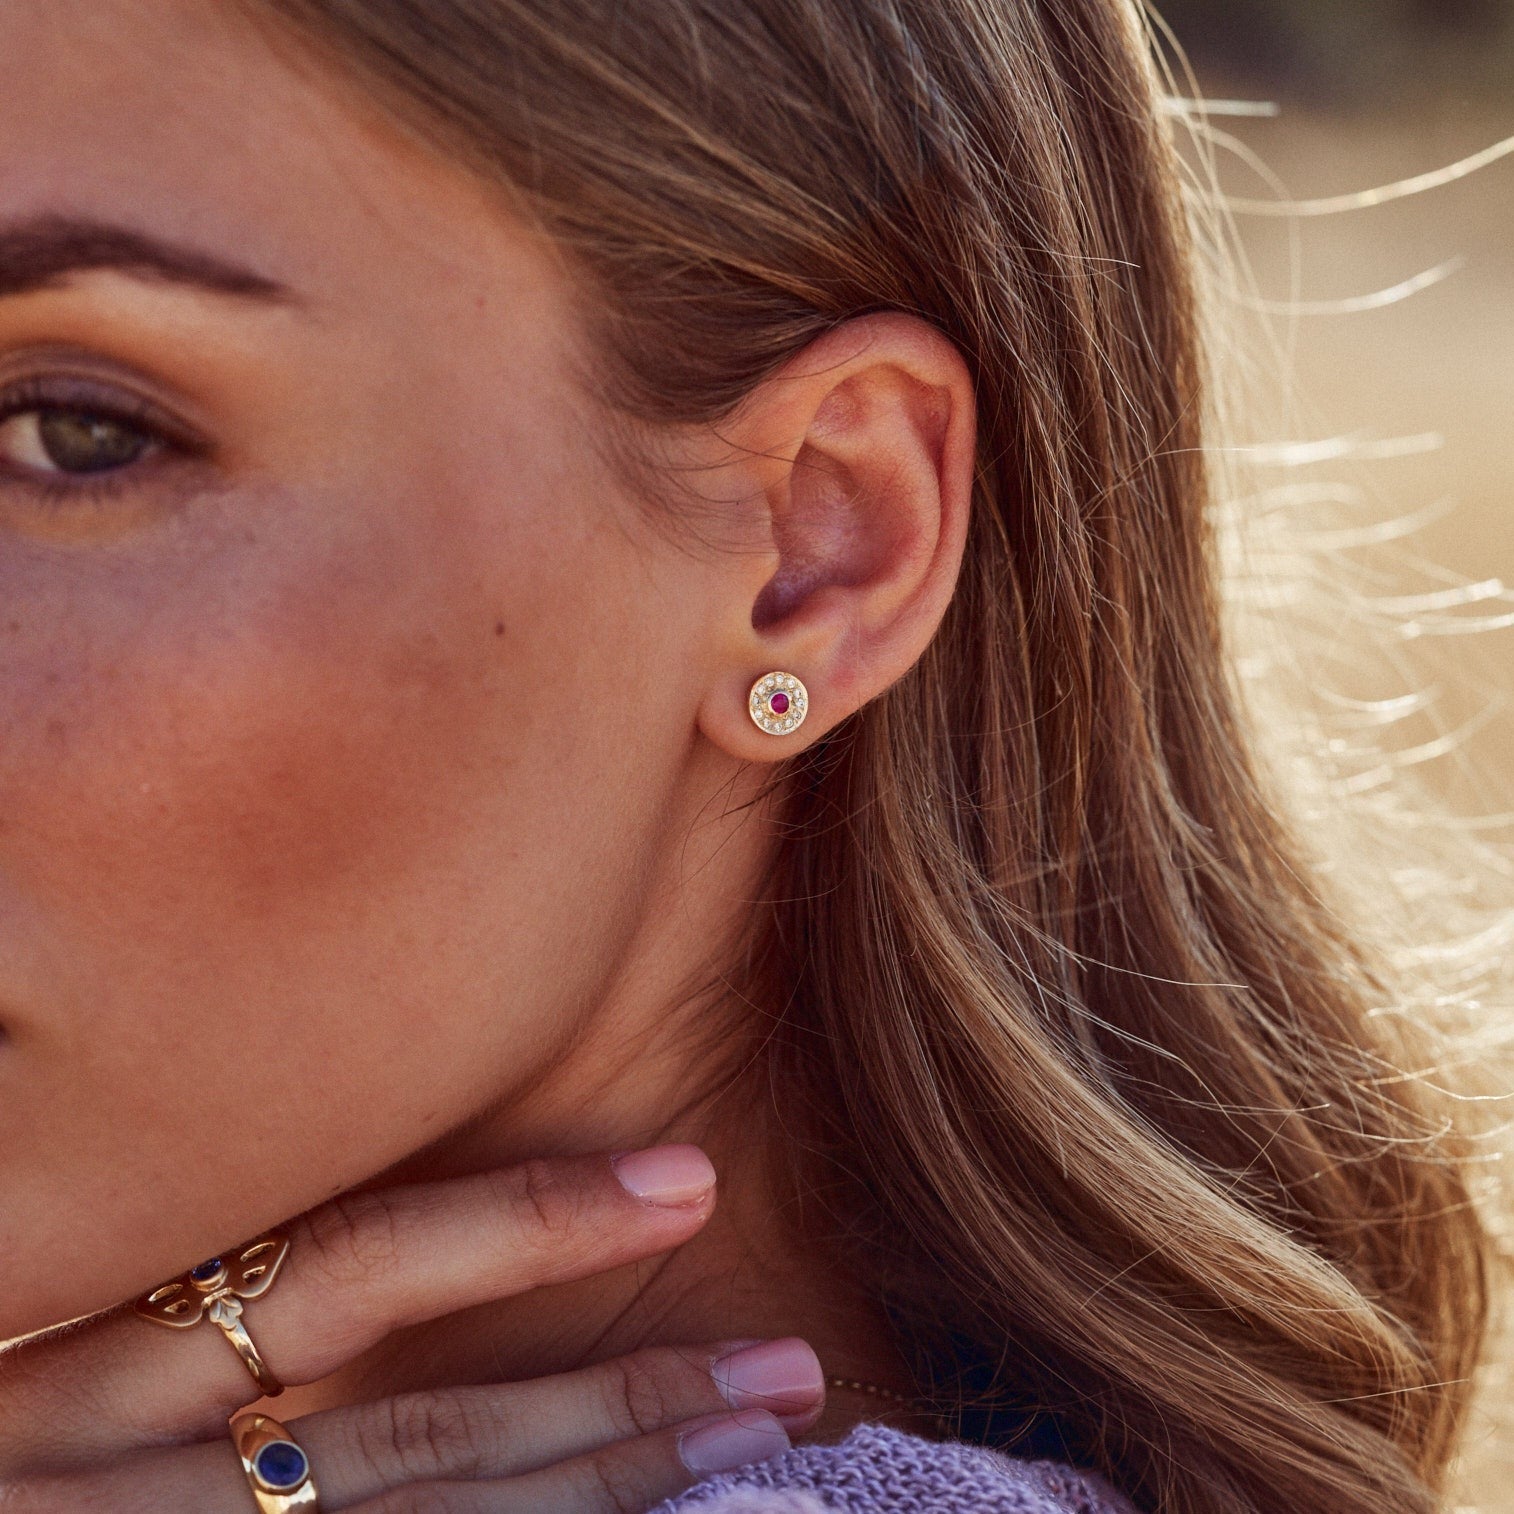 Foto de la oreja de la modelo con uno de los Pendientes Marie, donde se aprecia el precioso contraste del rubí y los diamantes con el oro y la piel.